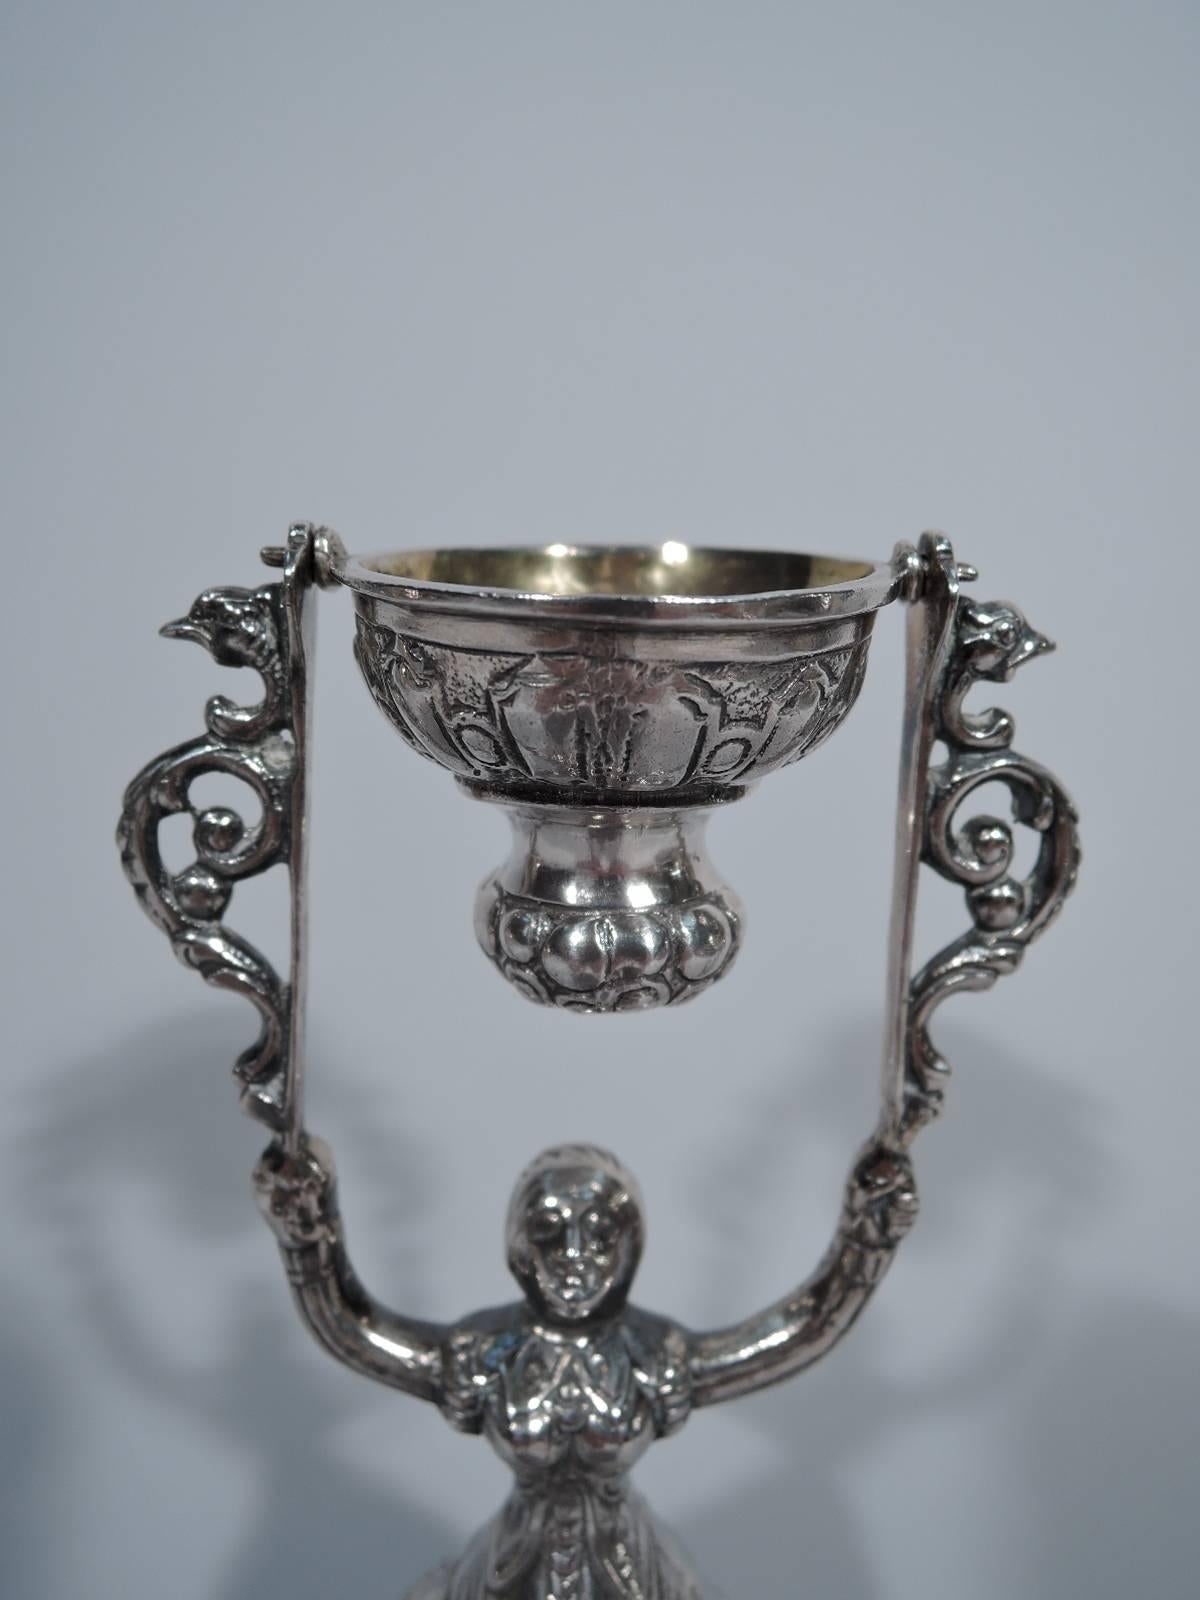 Renaissance Revival Dutch Silver Wedding Cup with Renaissance Lady